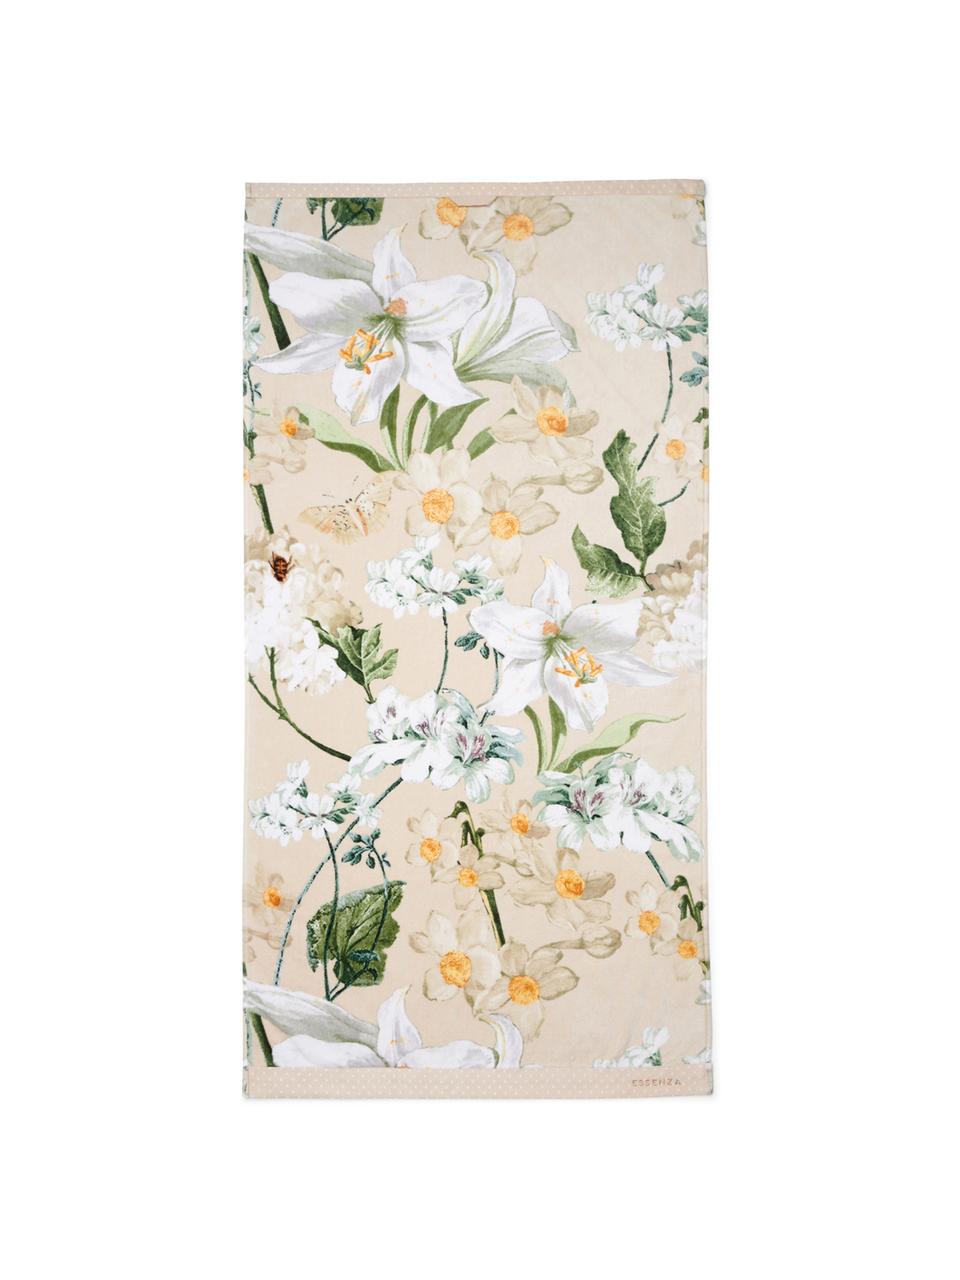 Handtuch Rosalee in verschiedenen Grössen, mit Blumen-Muster, 100% Bio-Baumwolle, GOTS-zertifiziert, Beige, gemustert, Duschtuch, B 70 x L 140 cm